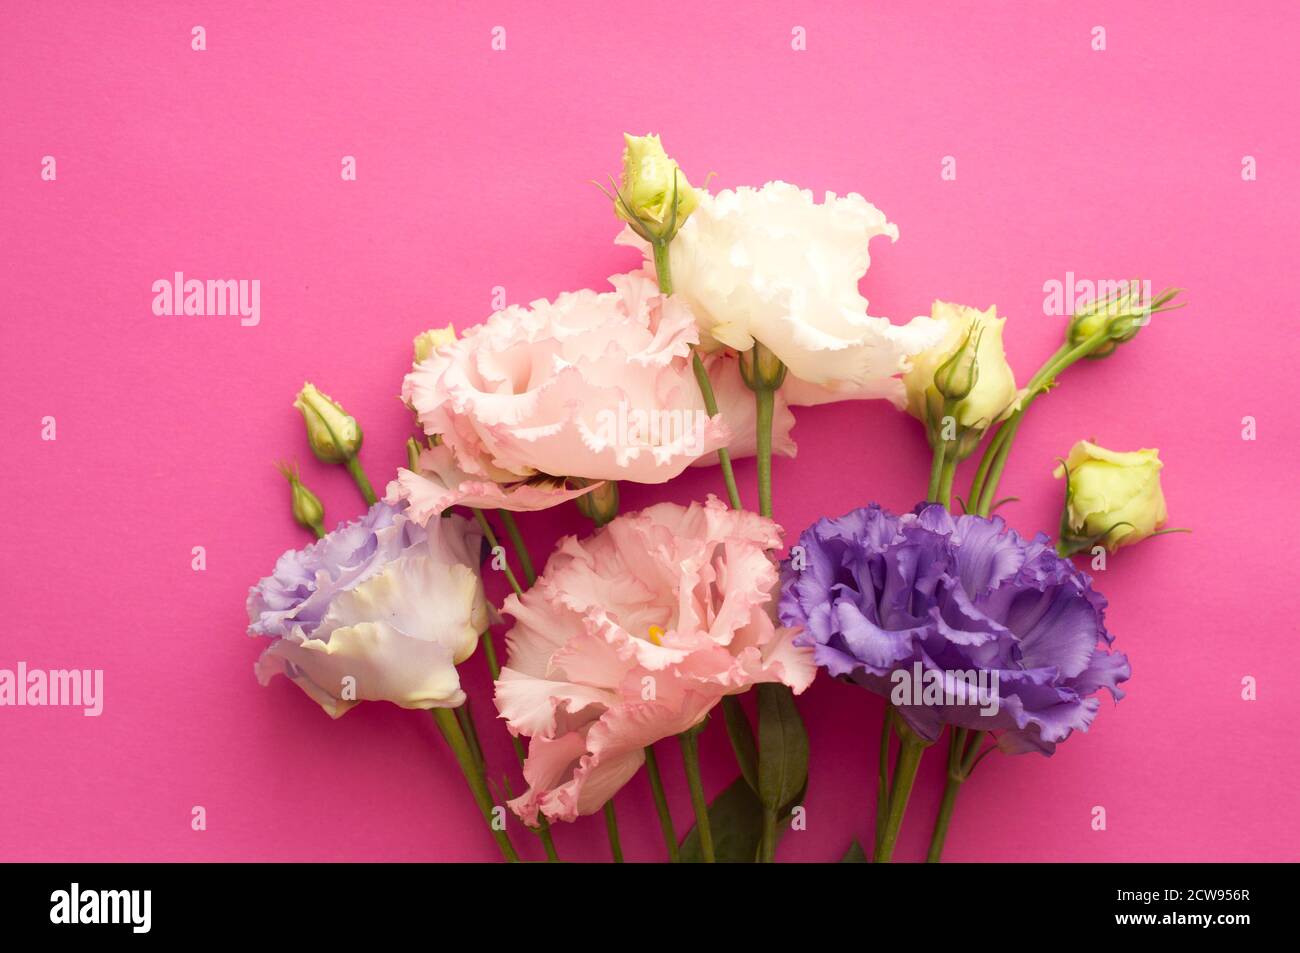 Schöne rosa und lila eustoma Blüten (lisianthus) in voller Blüte mit grünen Blättern. Blumenstrauß auf einem rosa hellen Hintergrund. Stockfoto